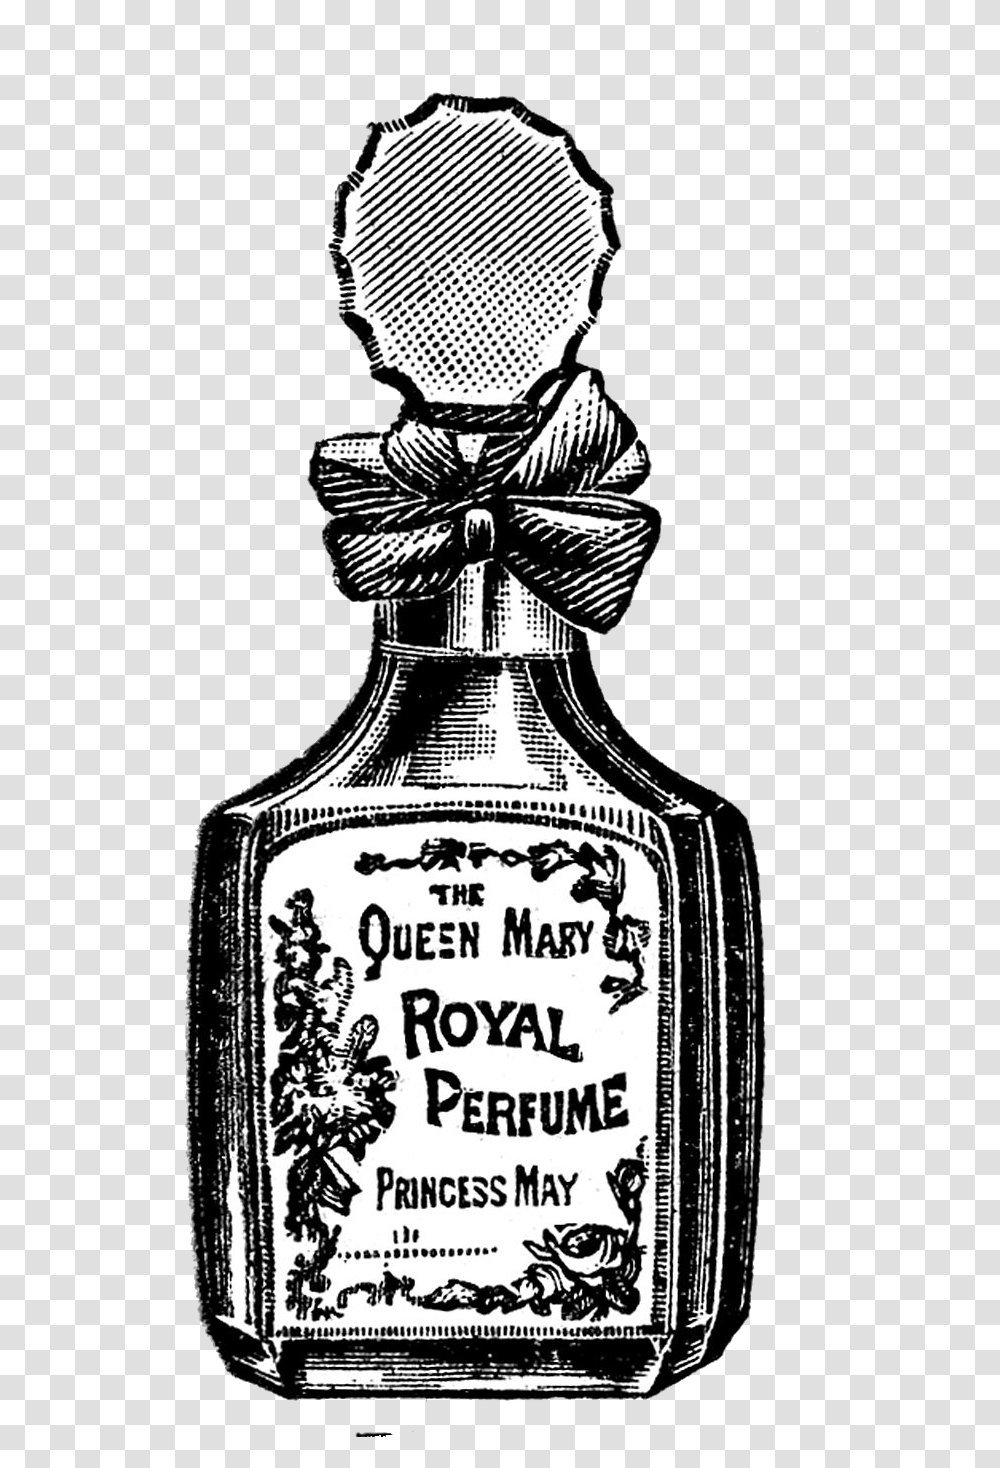 Vintage Perfume Bottle Vector Download Vintage Perfume Bottle, Liquor, Alcohol, Beverage, Drink Transparent Png